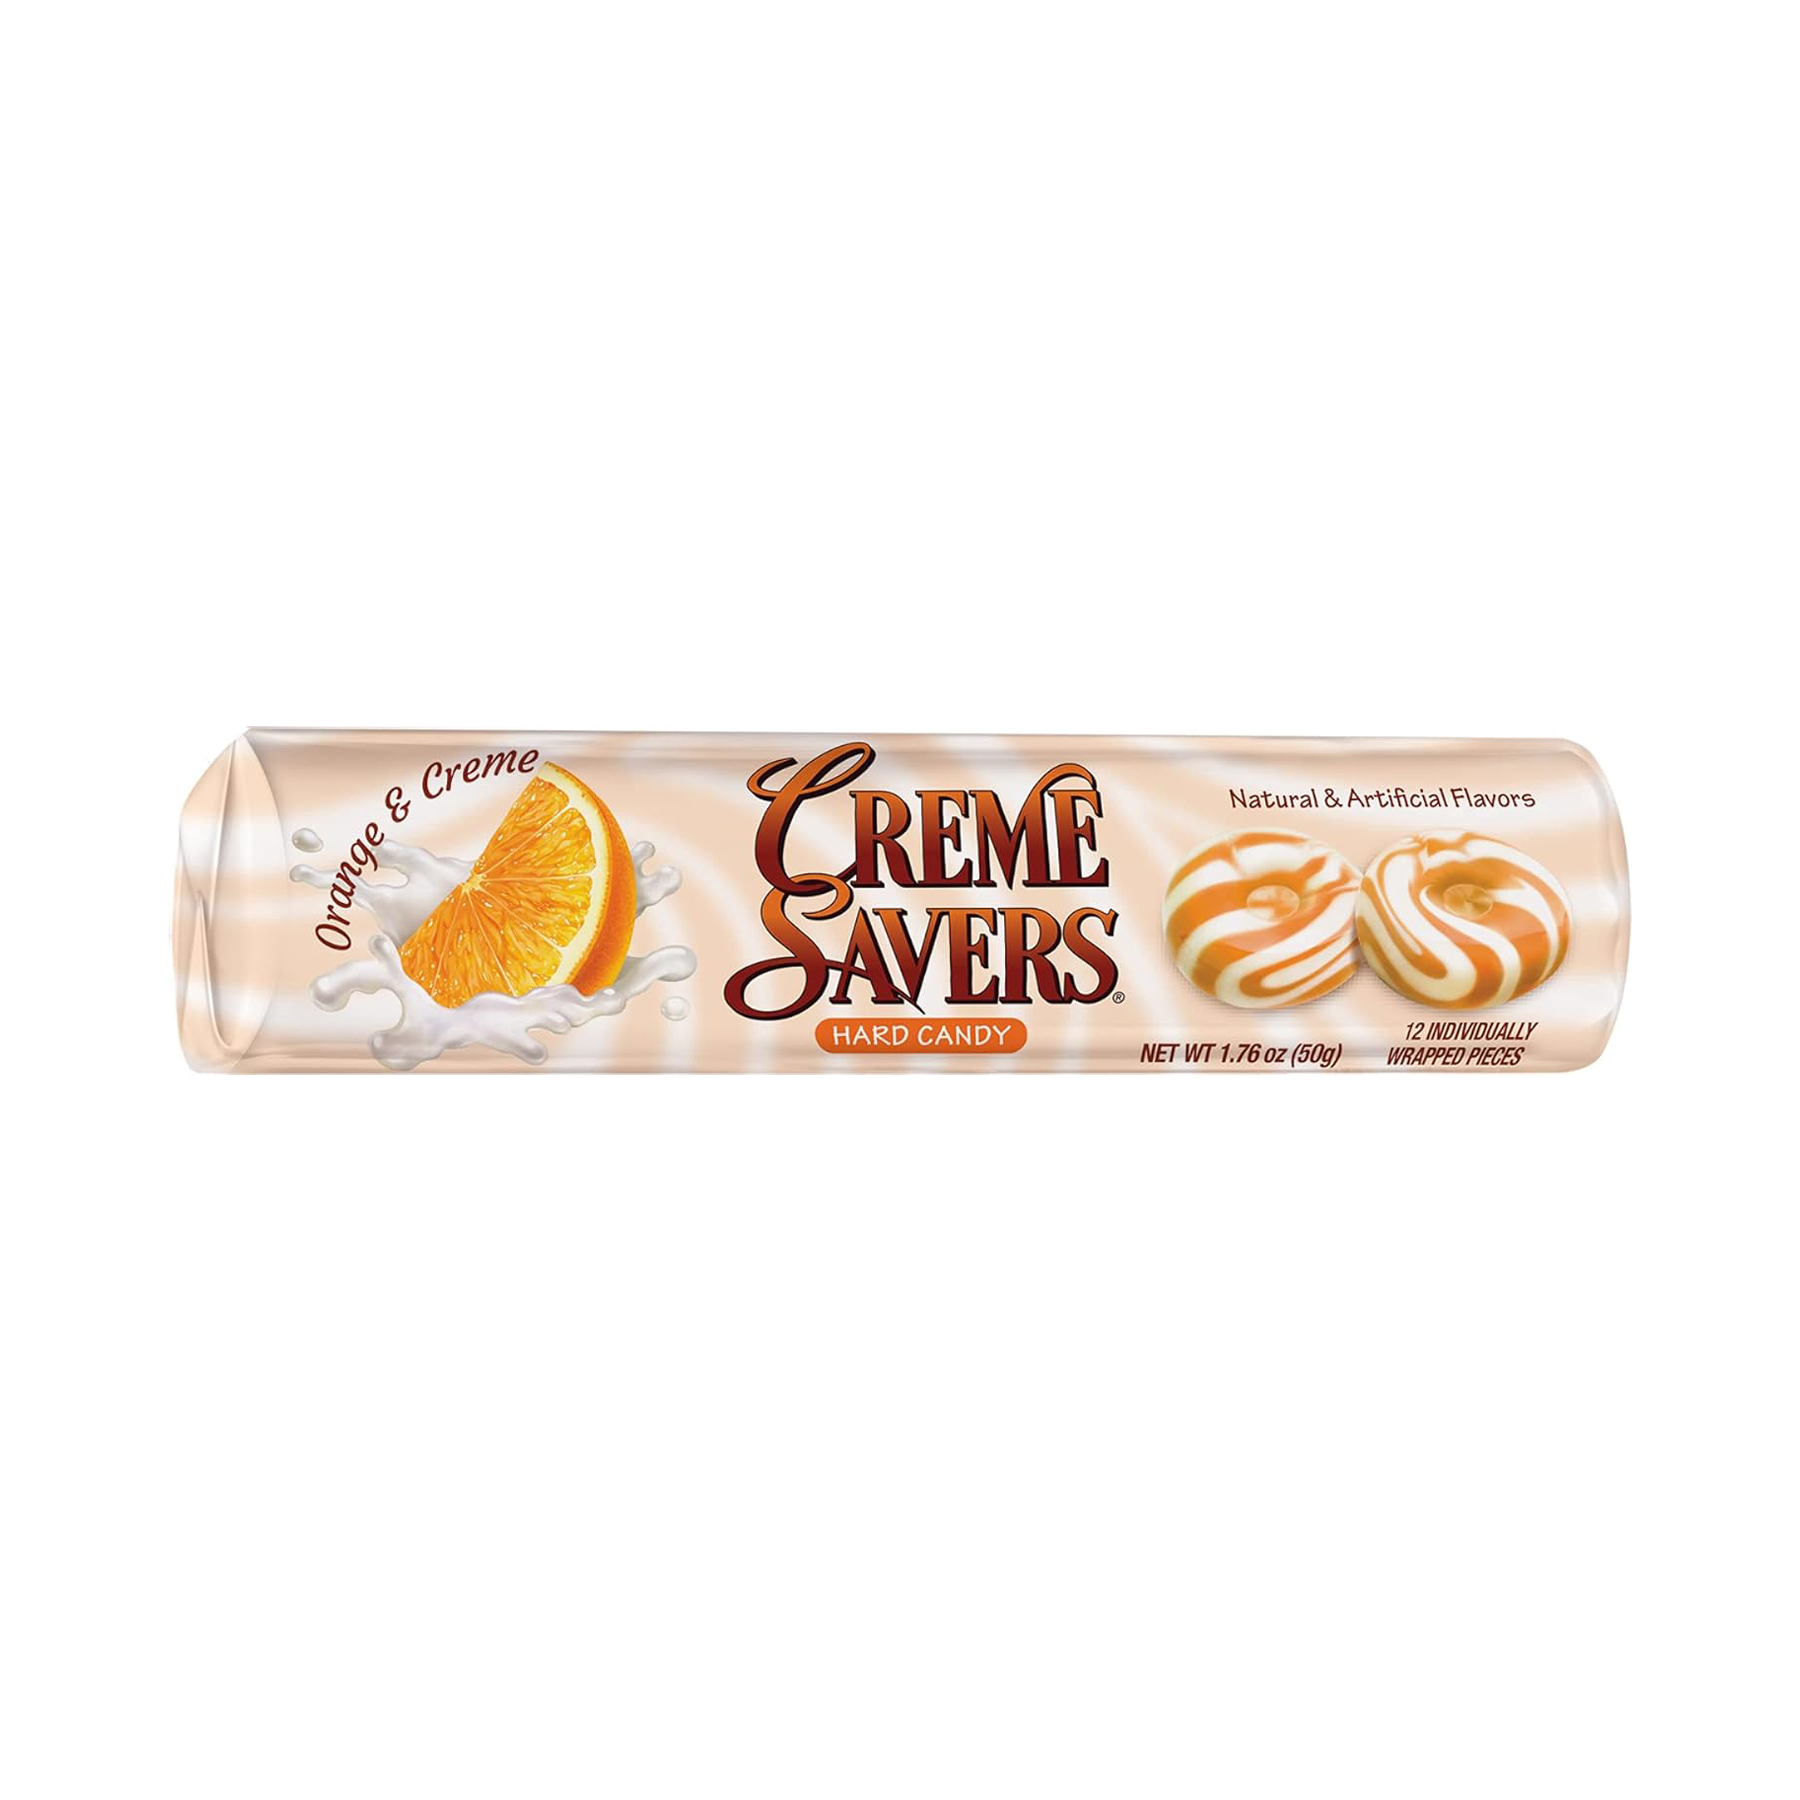 Creme Savers Orange & Creme Hard Candy (50g)